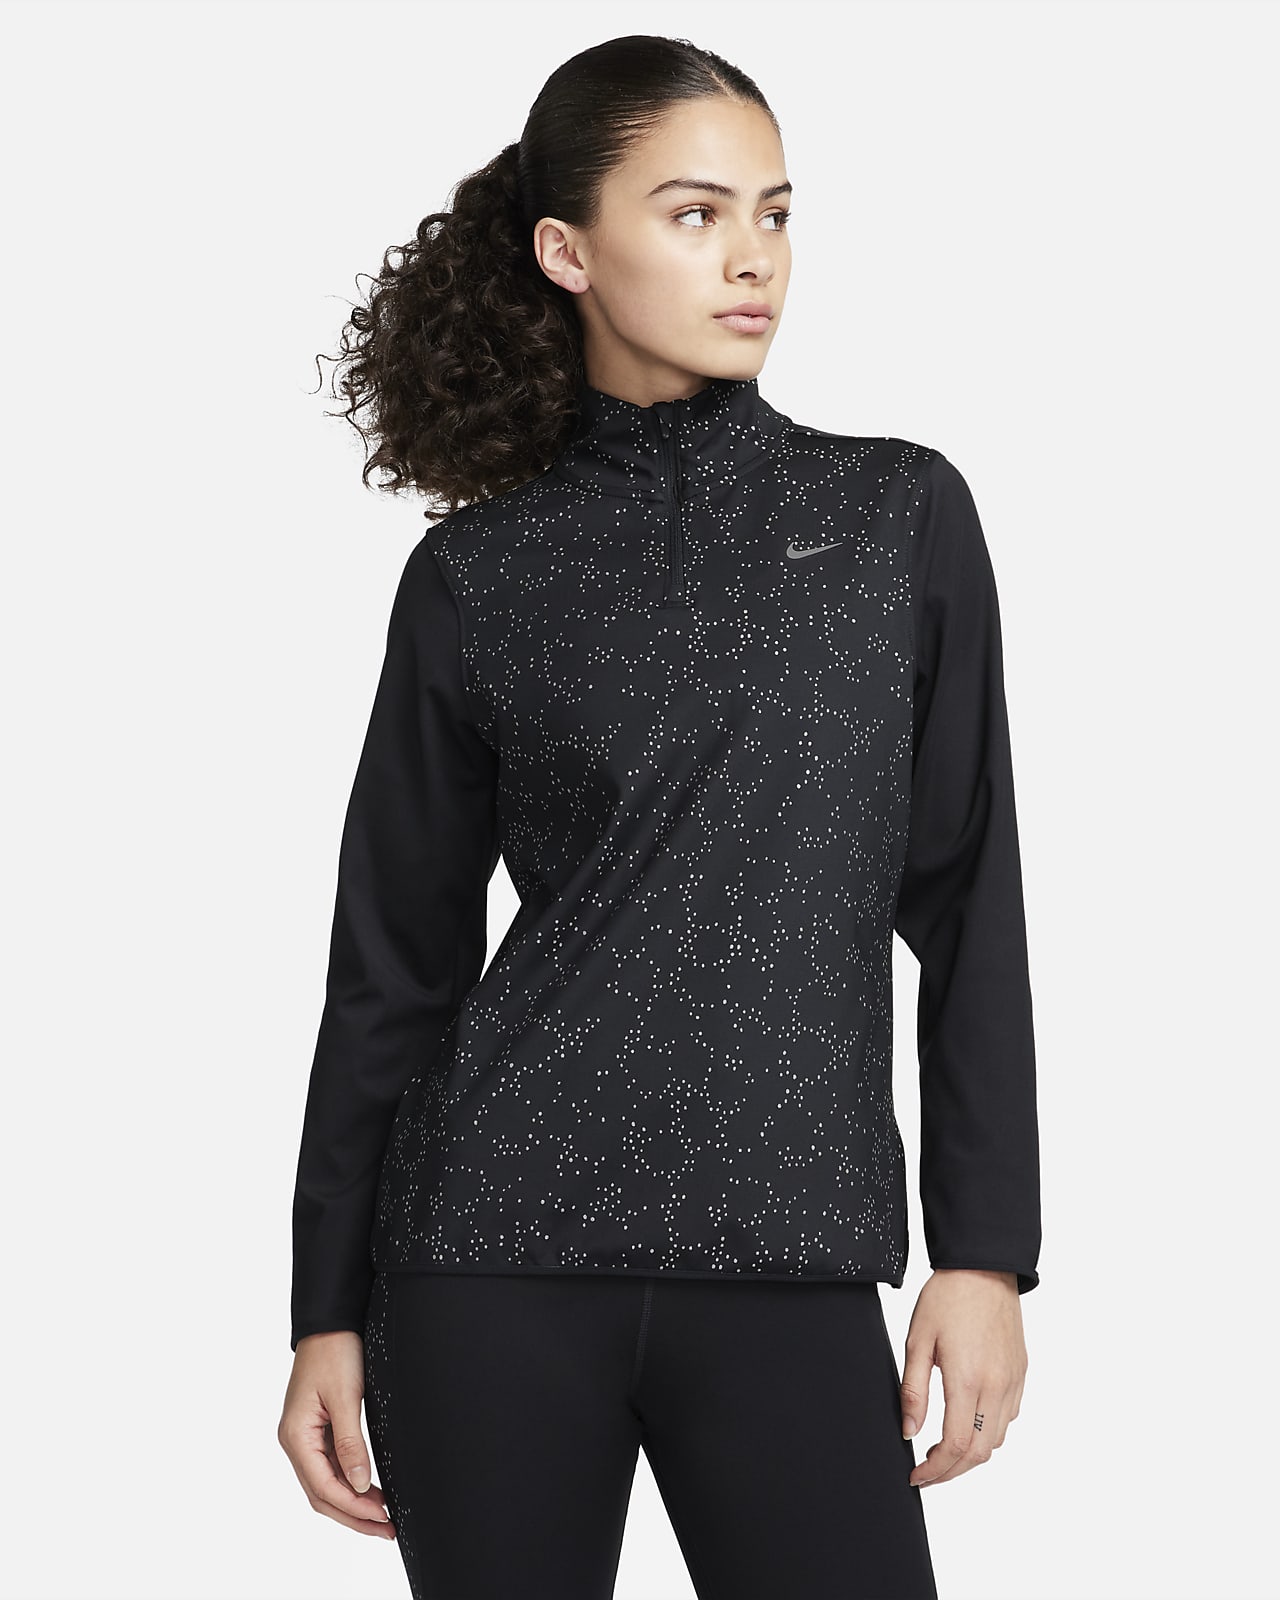 Γυναικεία μπλούζα για τρέξιμο με φερμουάρ στο 1/4 του μήκους Nike Swift